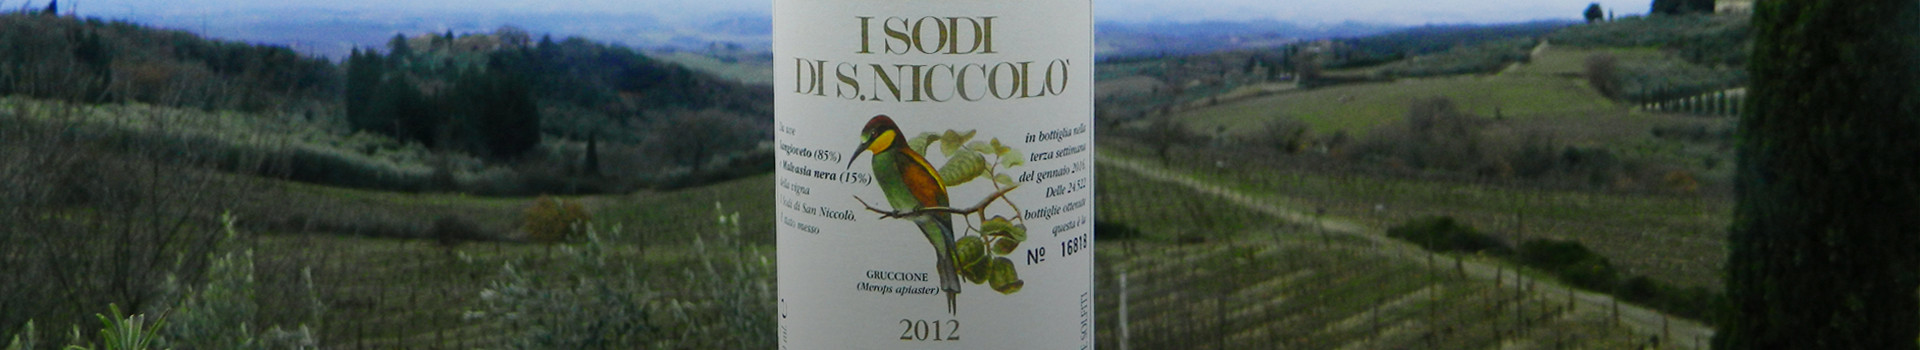 2012年的I Sodi di San Niccolò酒稳占意大利最佳葡萄酒前五